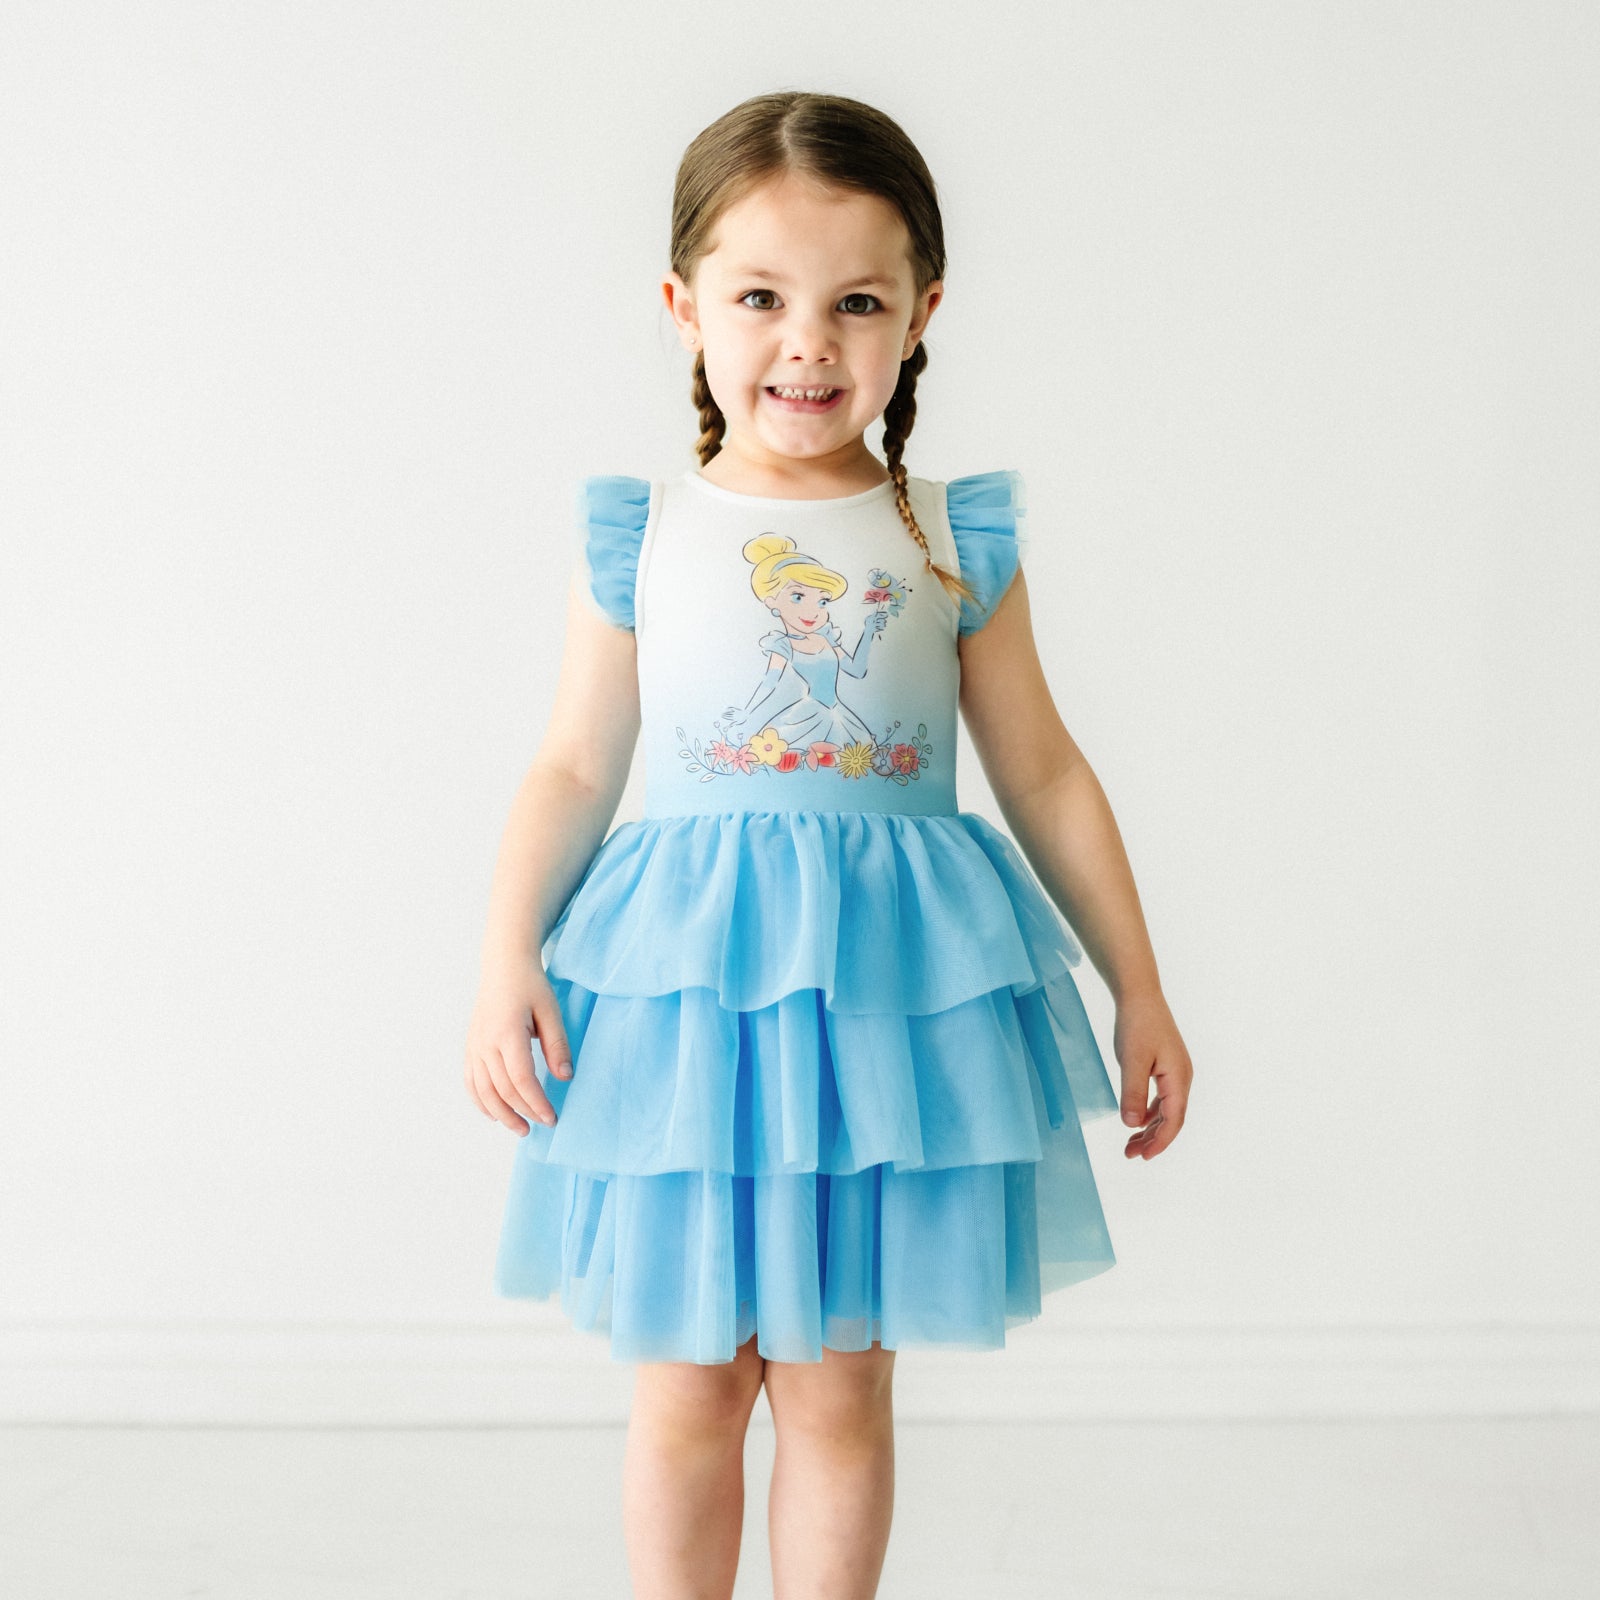 Child wearing a Cinderella flutter tiered tutu dress